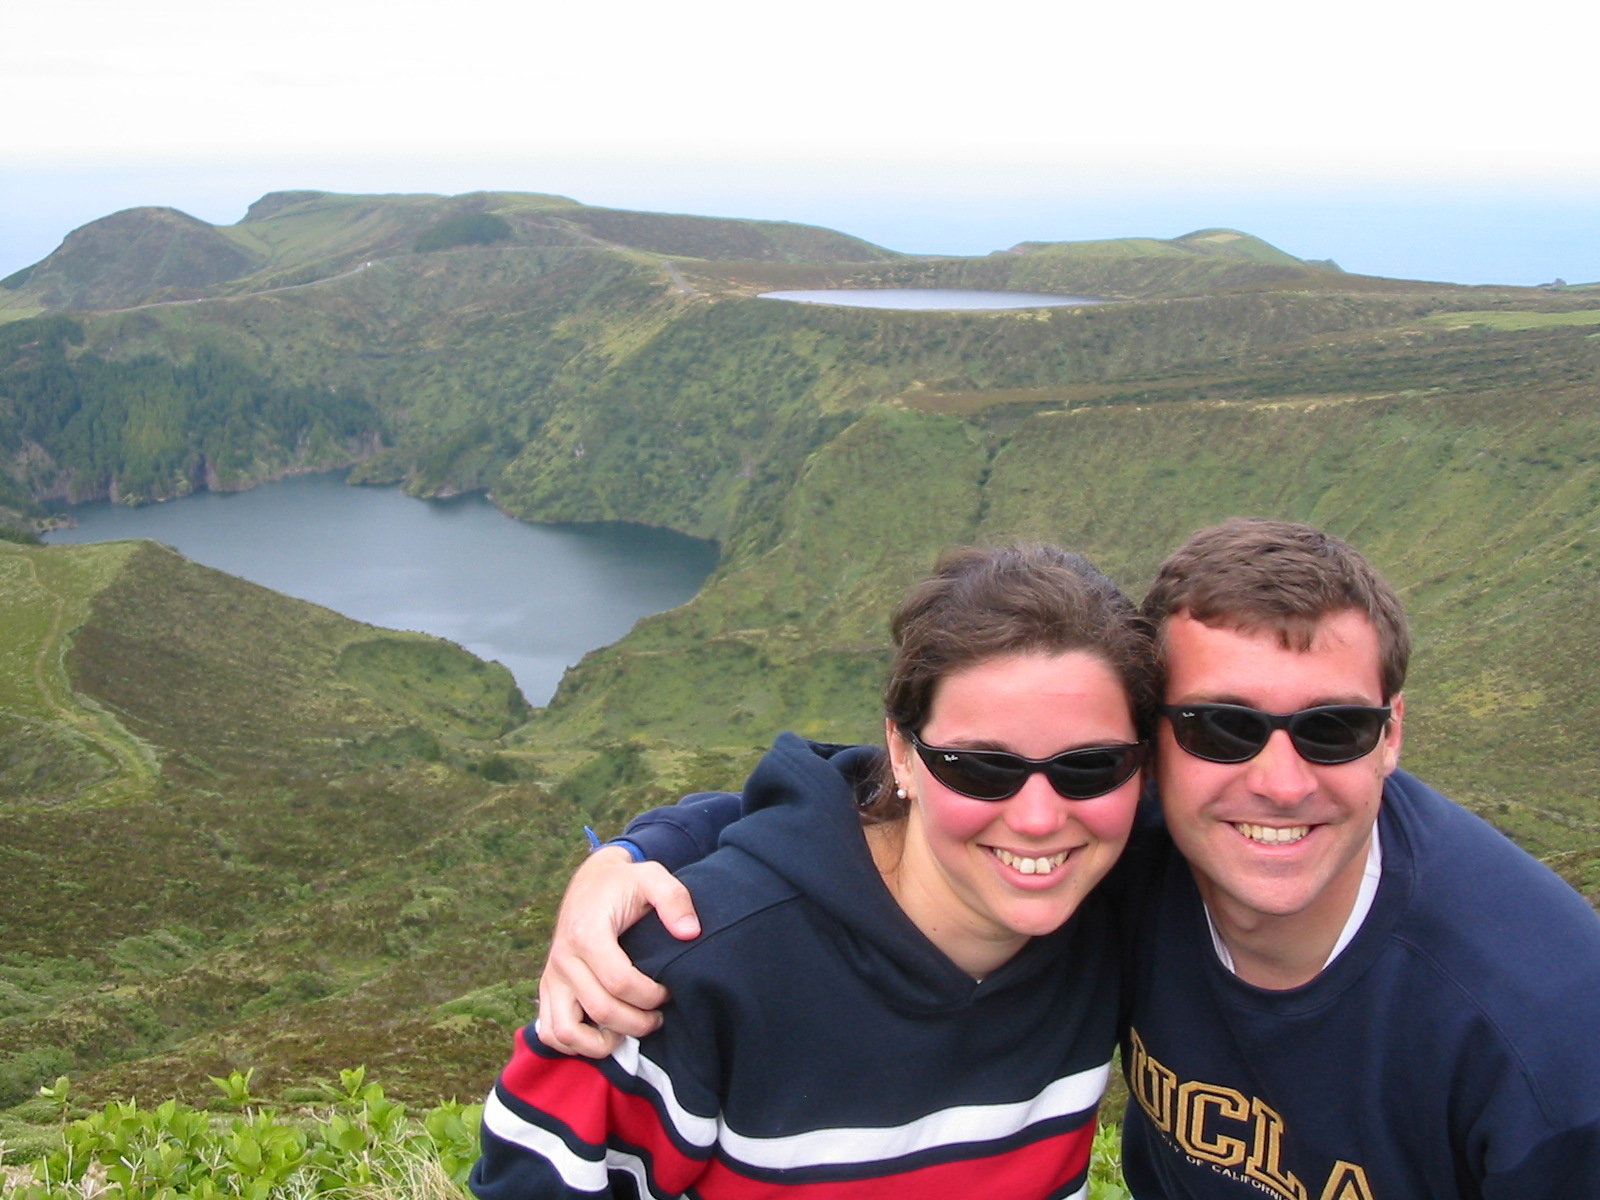 Tirada em 2003 em Ilha das Flores - Açores.